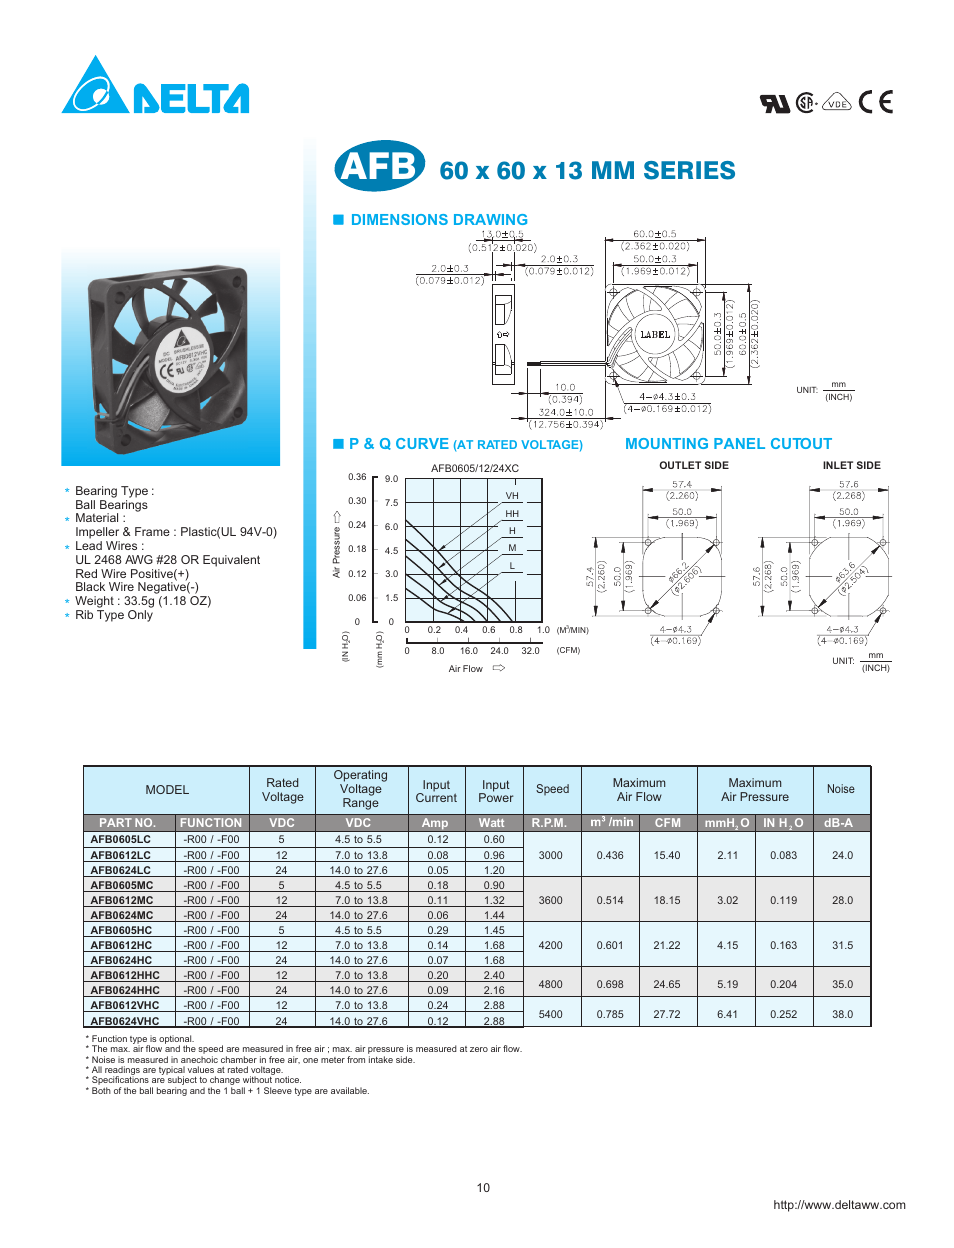 AFB0612HC